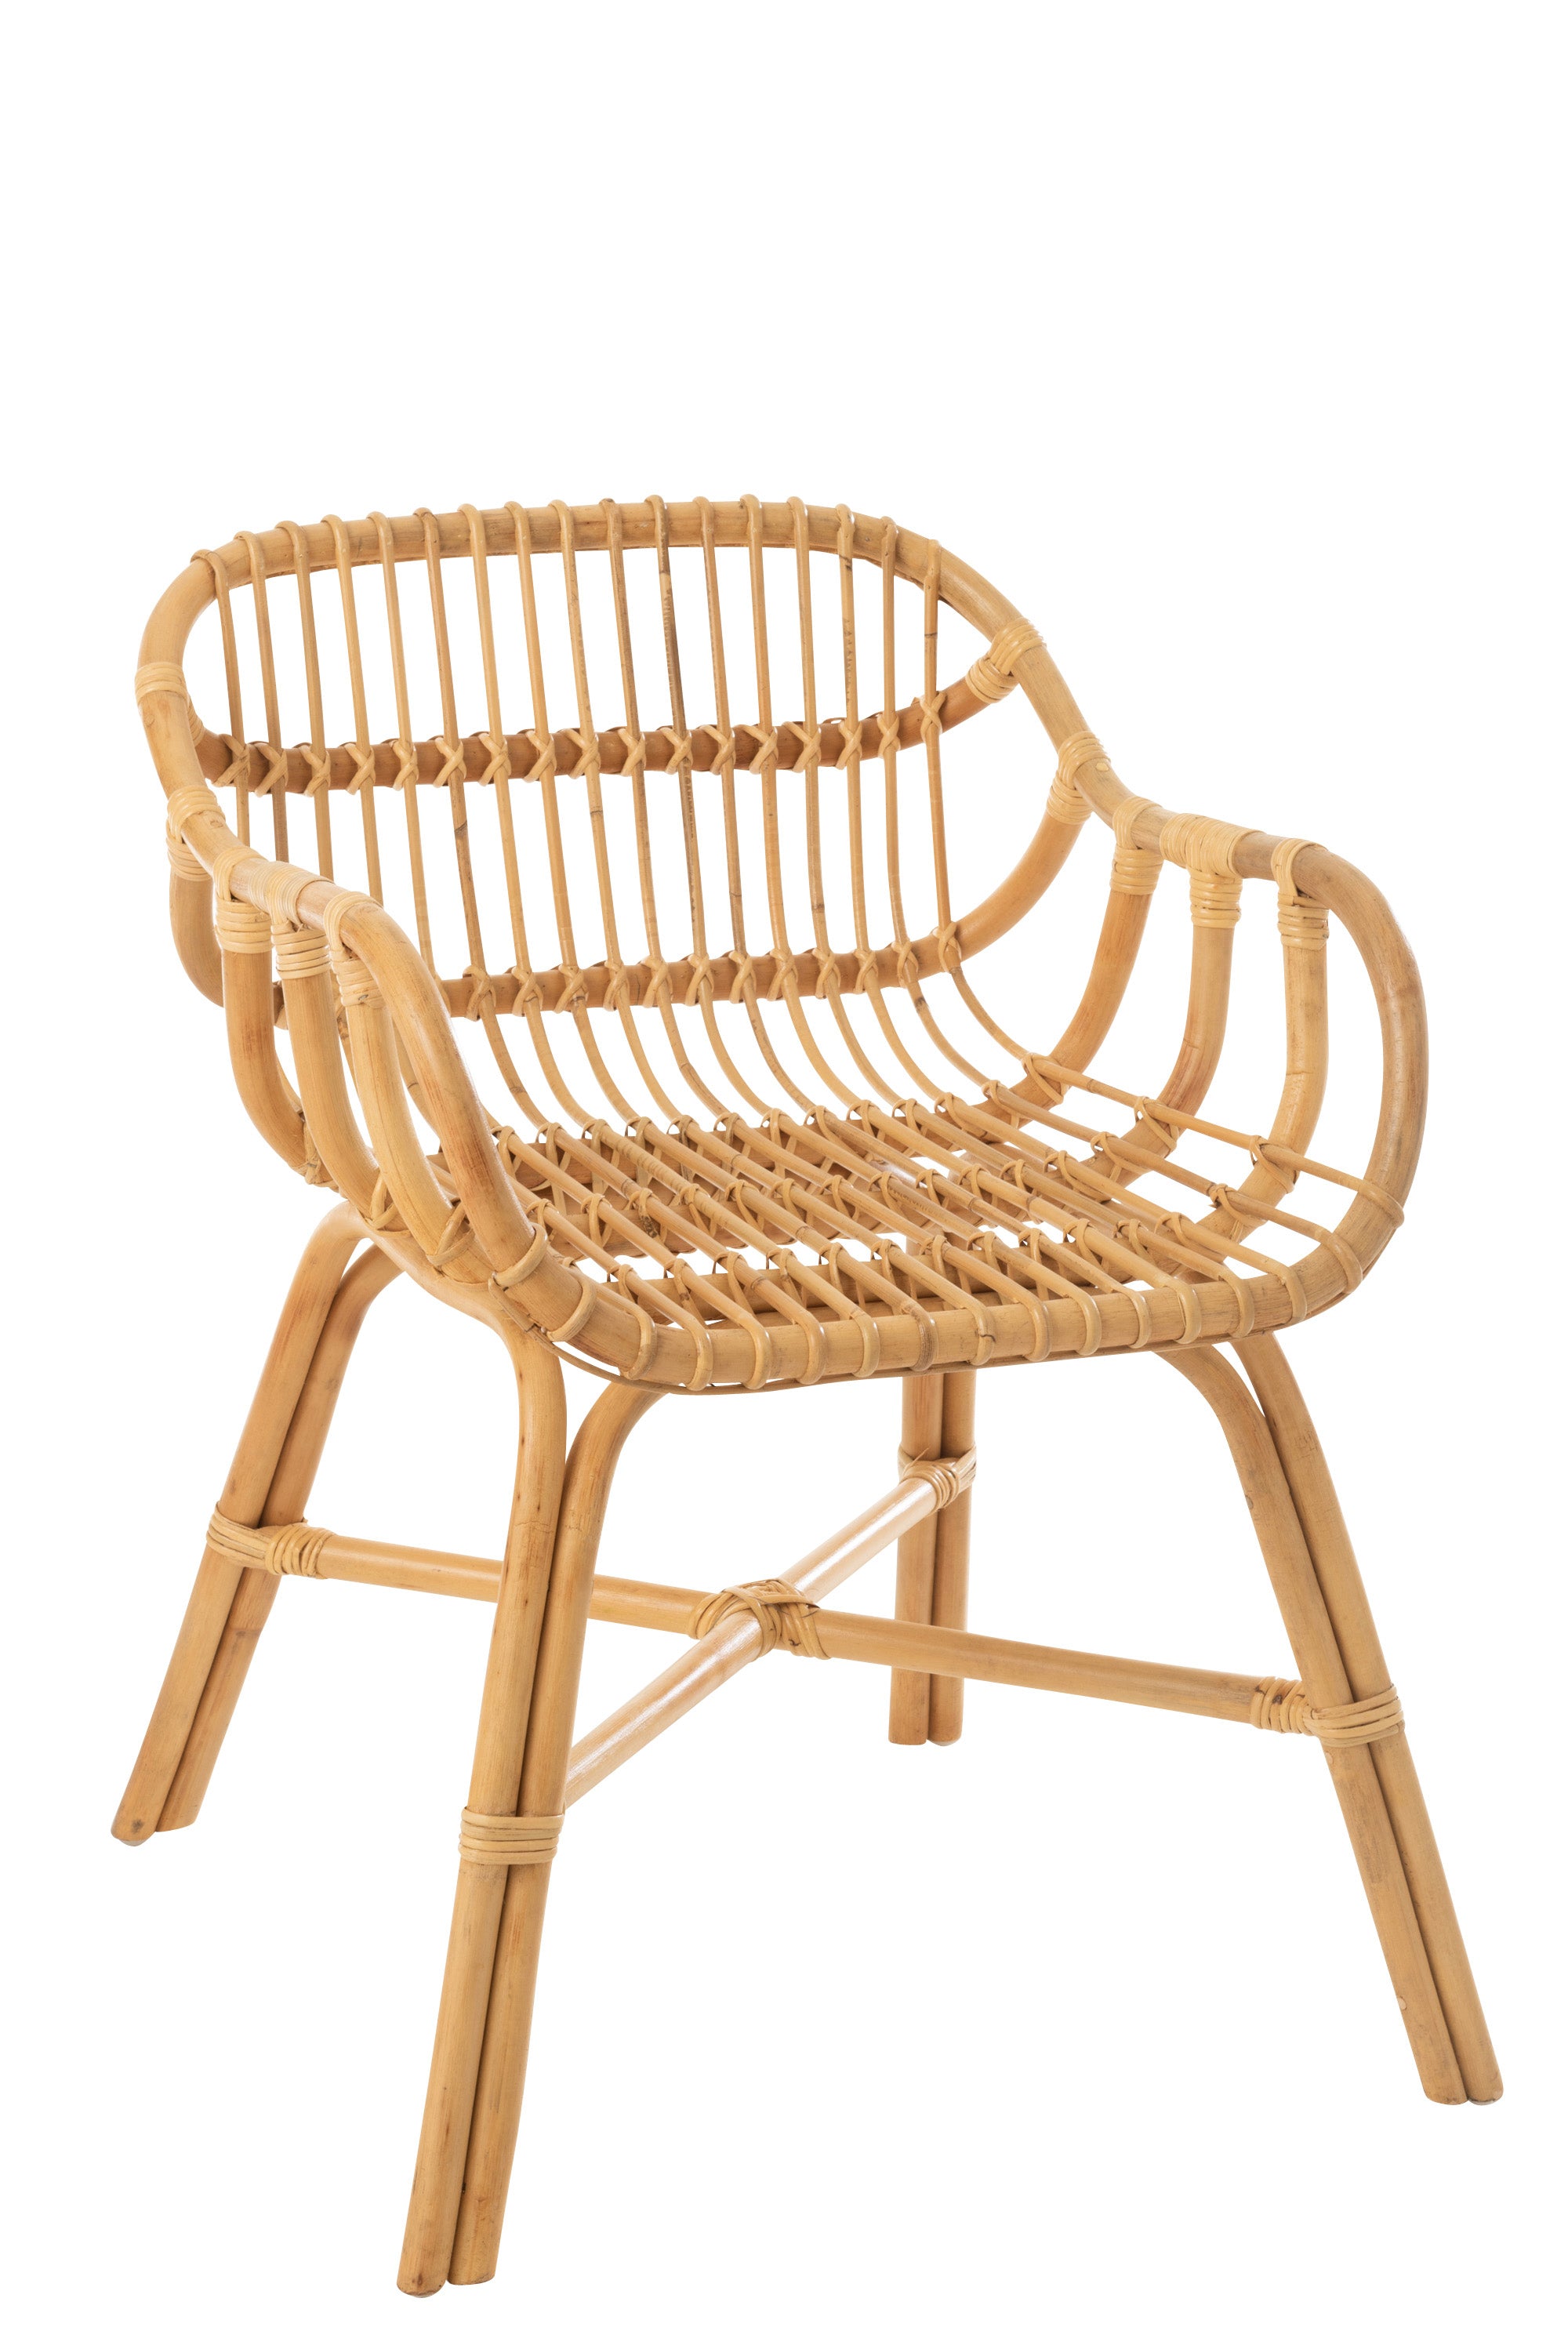 Stuhl aus Rattan; Gestell aus gebogenen Rattanstangen, mit einem Mittelkreuz stabilisiert; darauf eine Sitzschale aus Rattanstangen, abgerundete Armstützen , die in eine halbhohe Lehne übergehen.